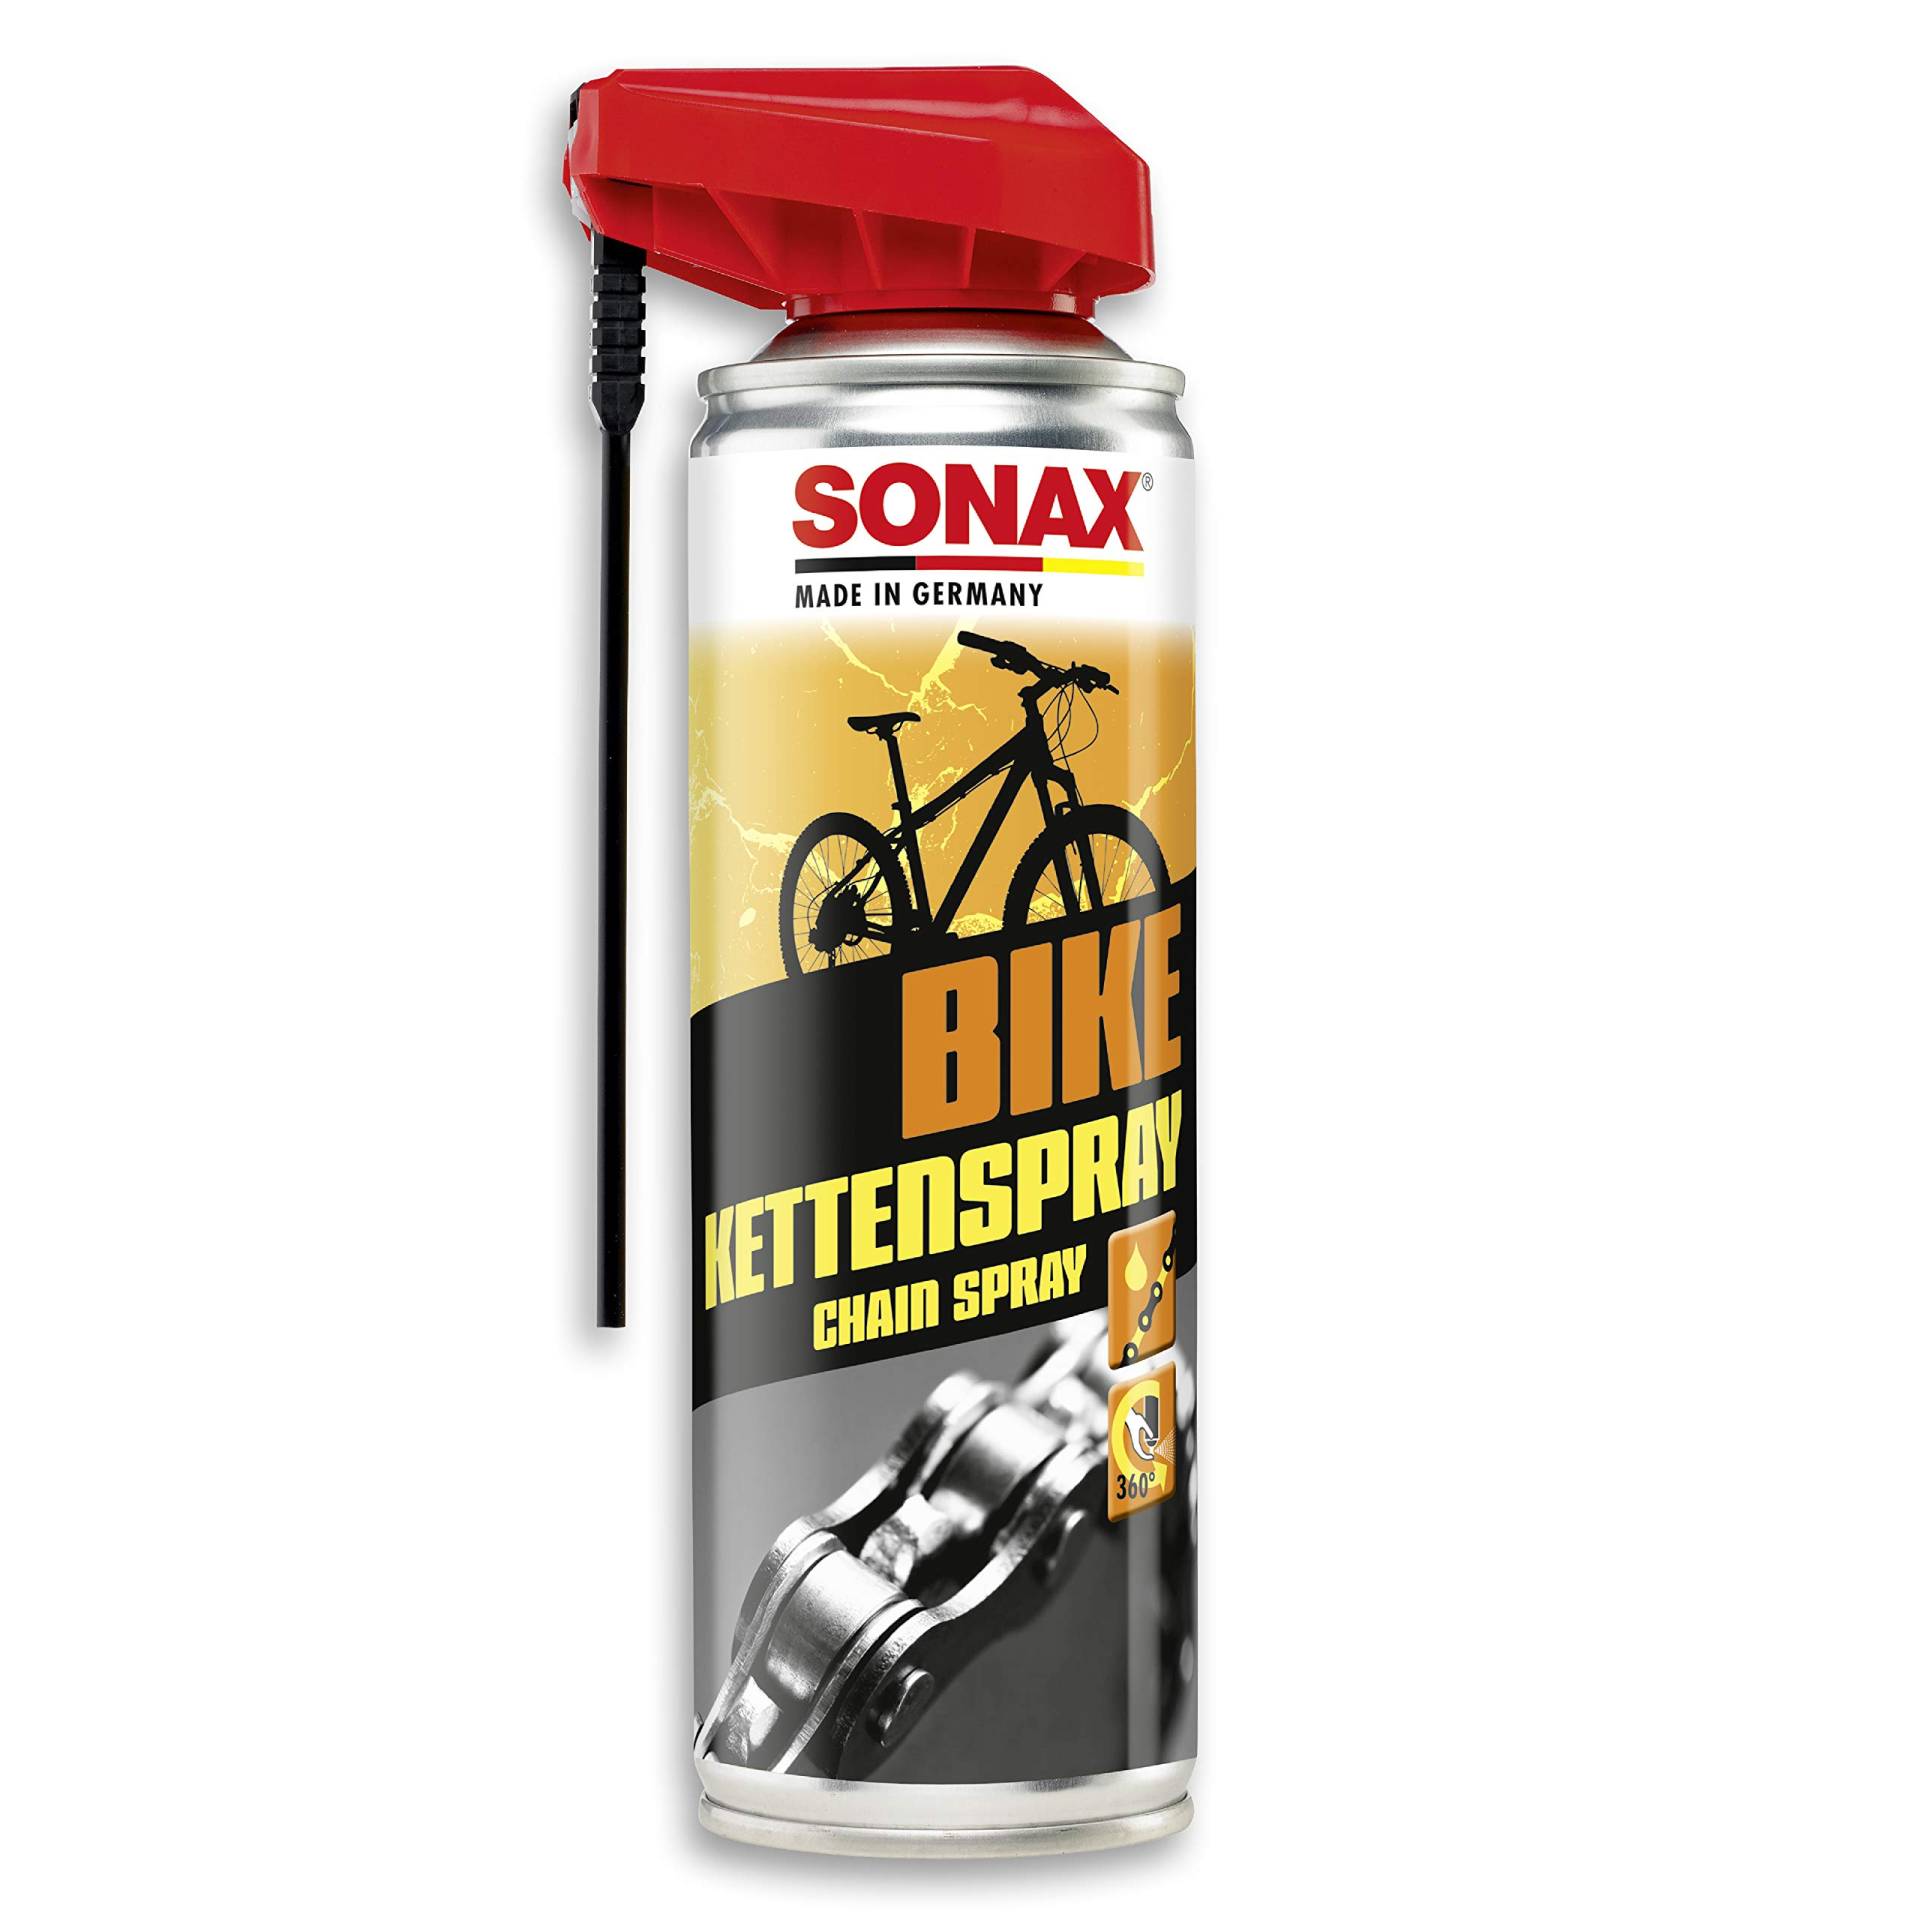 SONAX BIKE KettenSpray mit EasySpray (300 ml) reinigt, schützt & schmiert, verringert Verschleiß & Reibung, Korrosionsschützend, hohe Kriech- & Haftwirkung | Art-Nr. 08762000 von SONAX